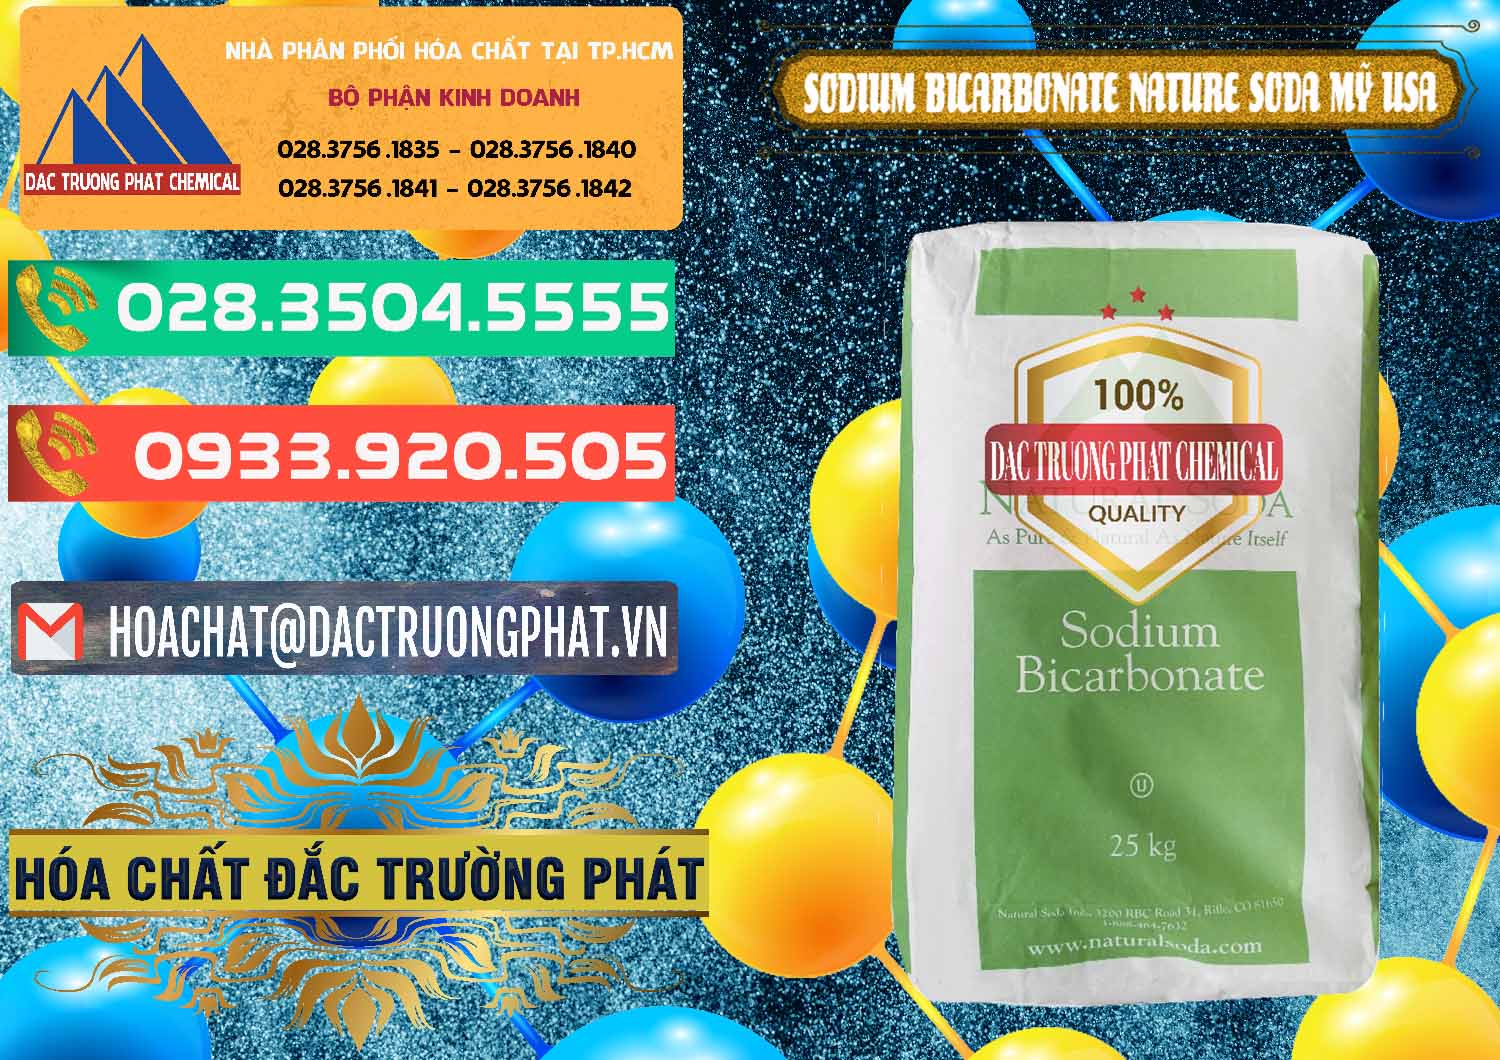 Đơn vị chuyên bán & cung ứng Sodium Bicarbonate – Bicar NaHCO3 Food Grade Nature Soda Mỹ USA - 0256 - Chuyên cung cấp & phân phối hóa chất tại TP.HCM - congtyhoachat.com.vn